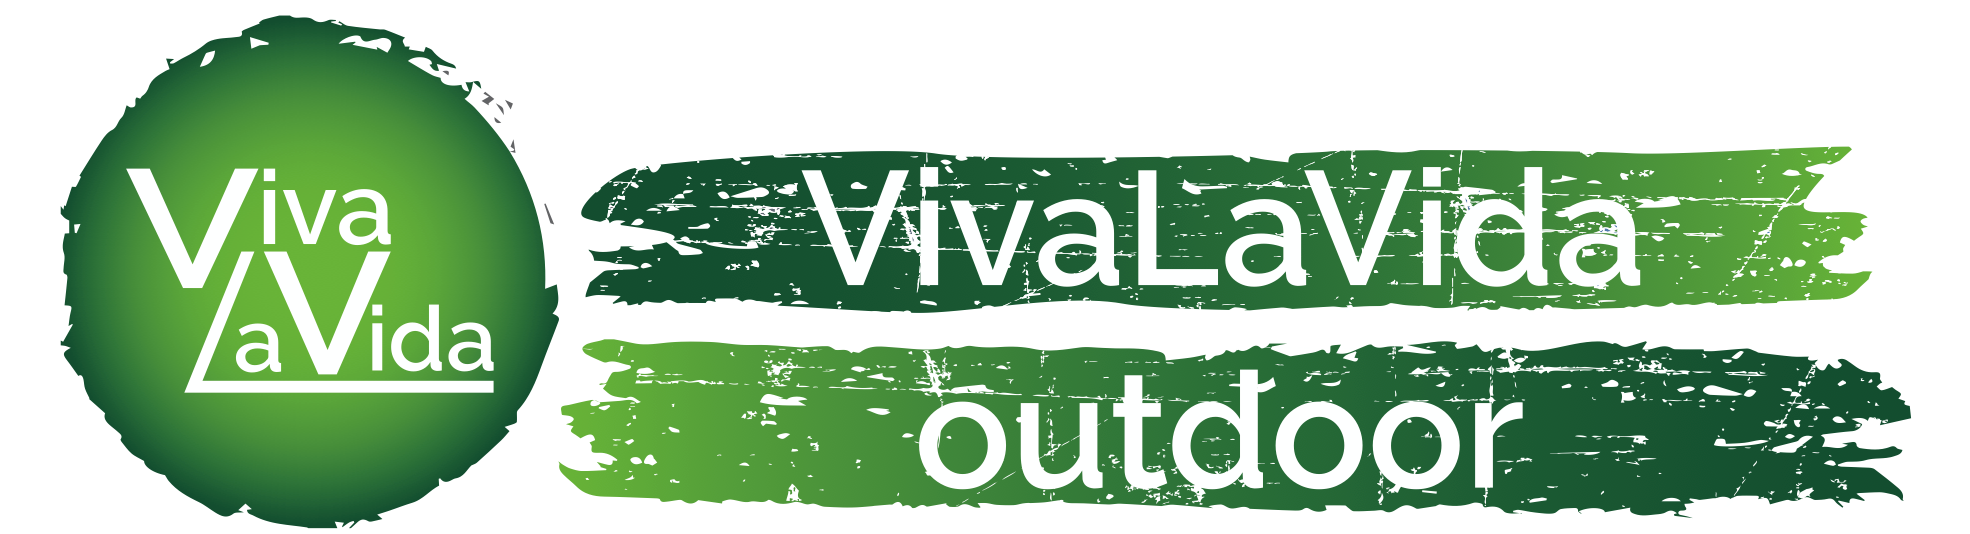 Vivalavida-Outdoor